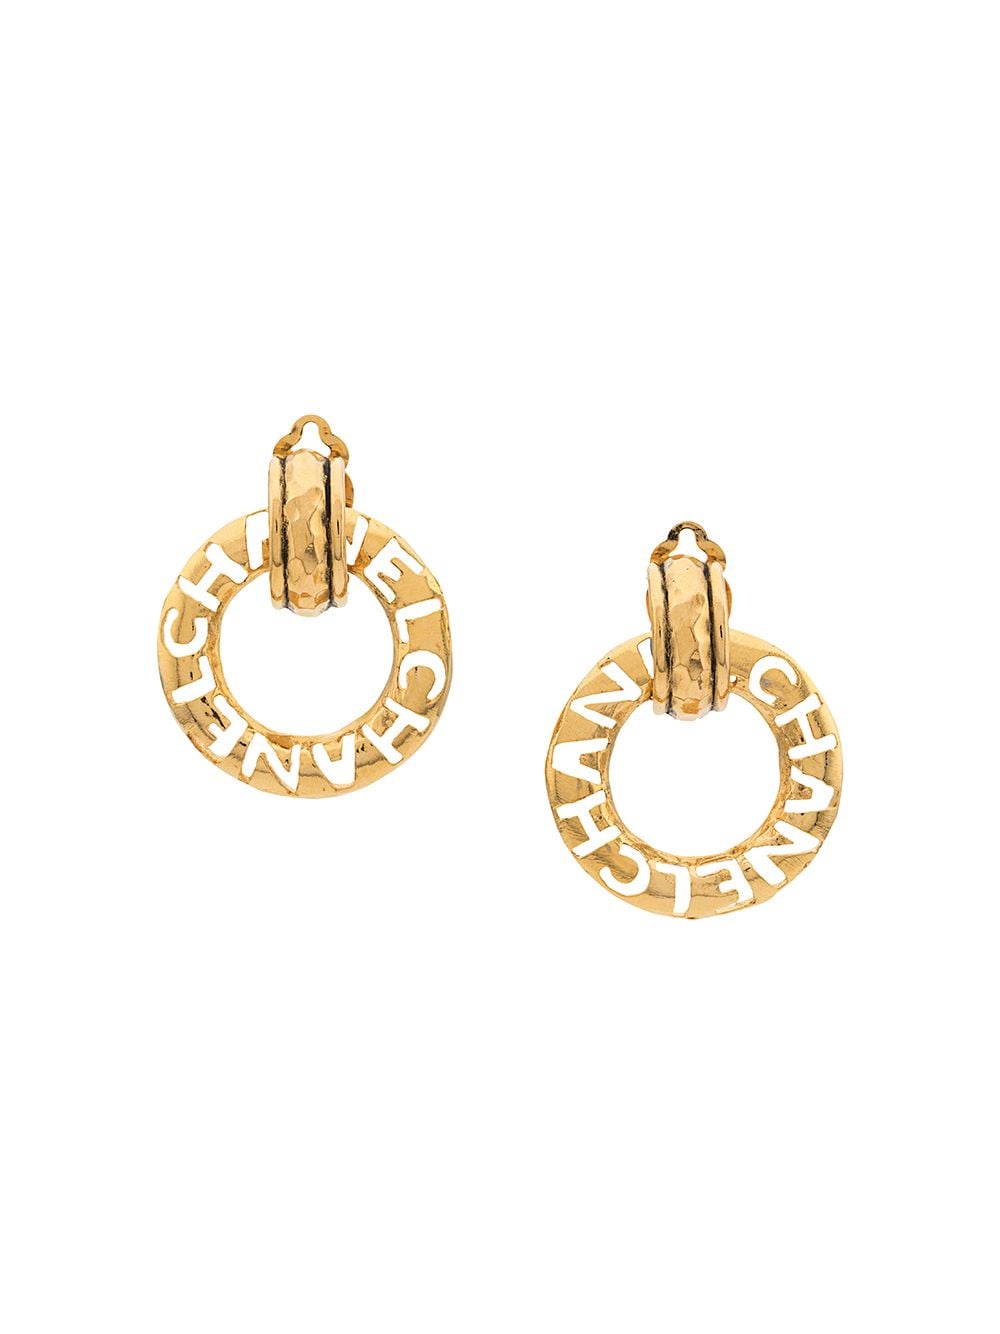 Chanel Pre-Owned 1980 door knocker logo earrings - Gold